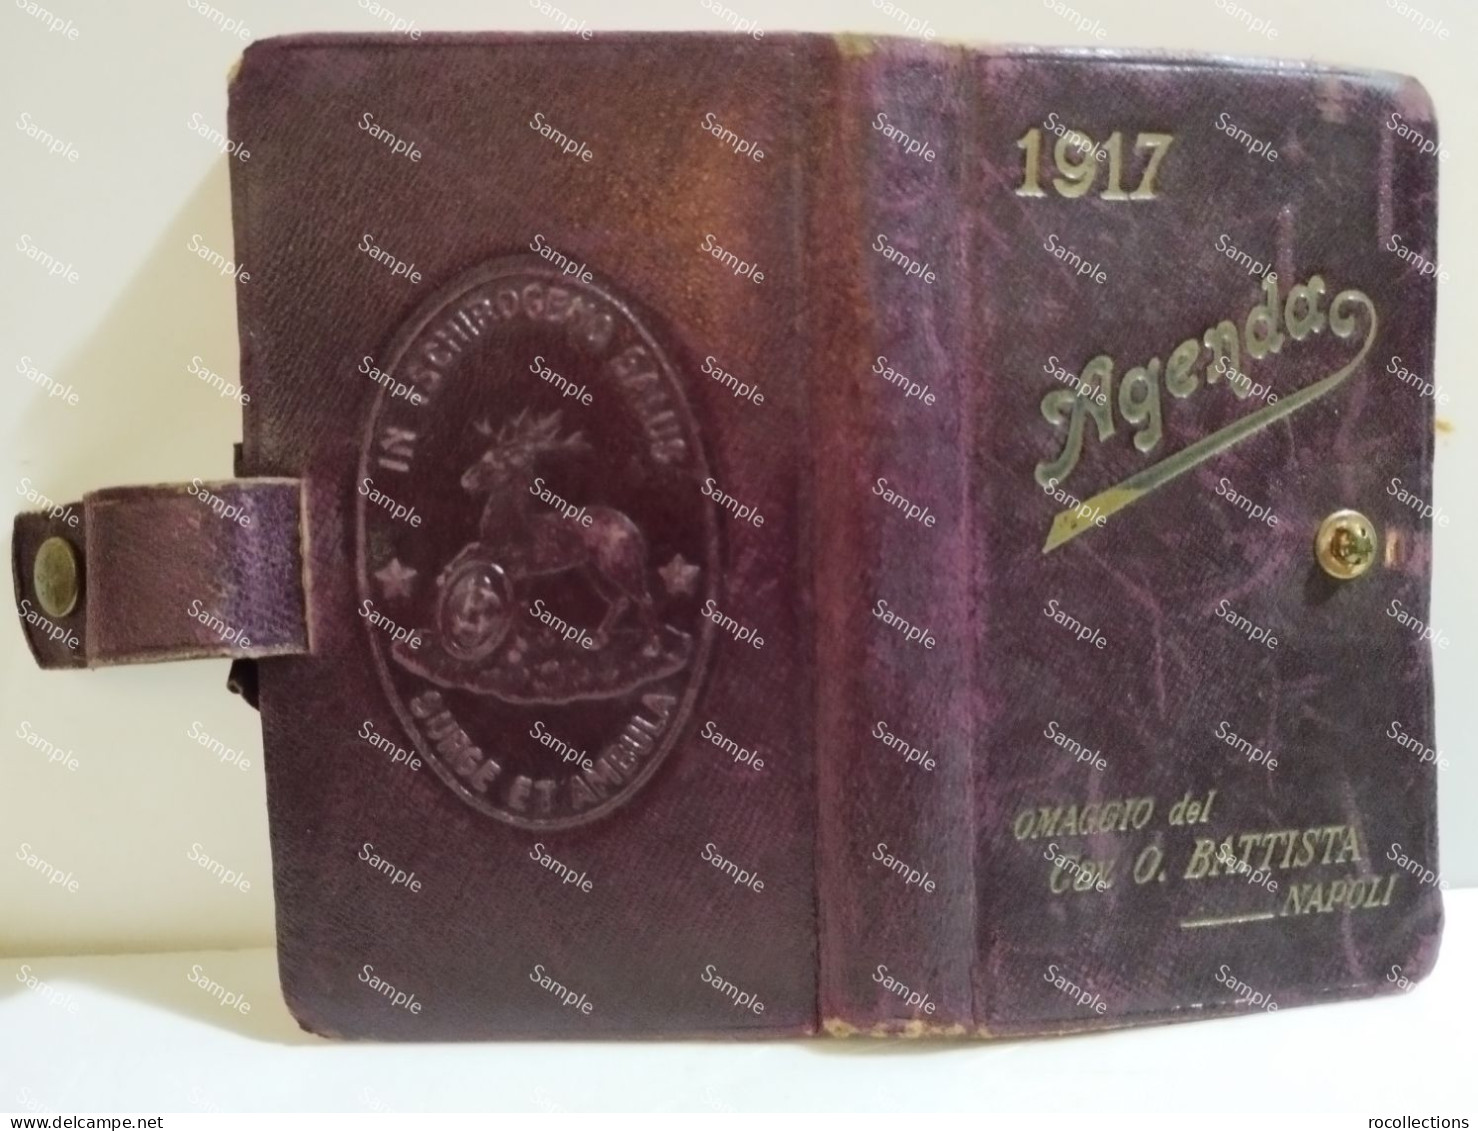 Italy Italia AGENDA 1917 Omaggio Cav. O. BATTISTA Napoli. - Other Book Accessories